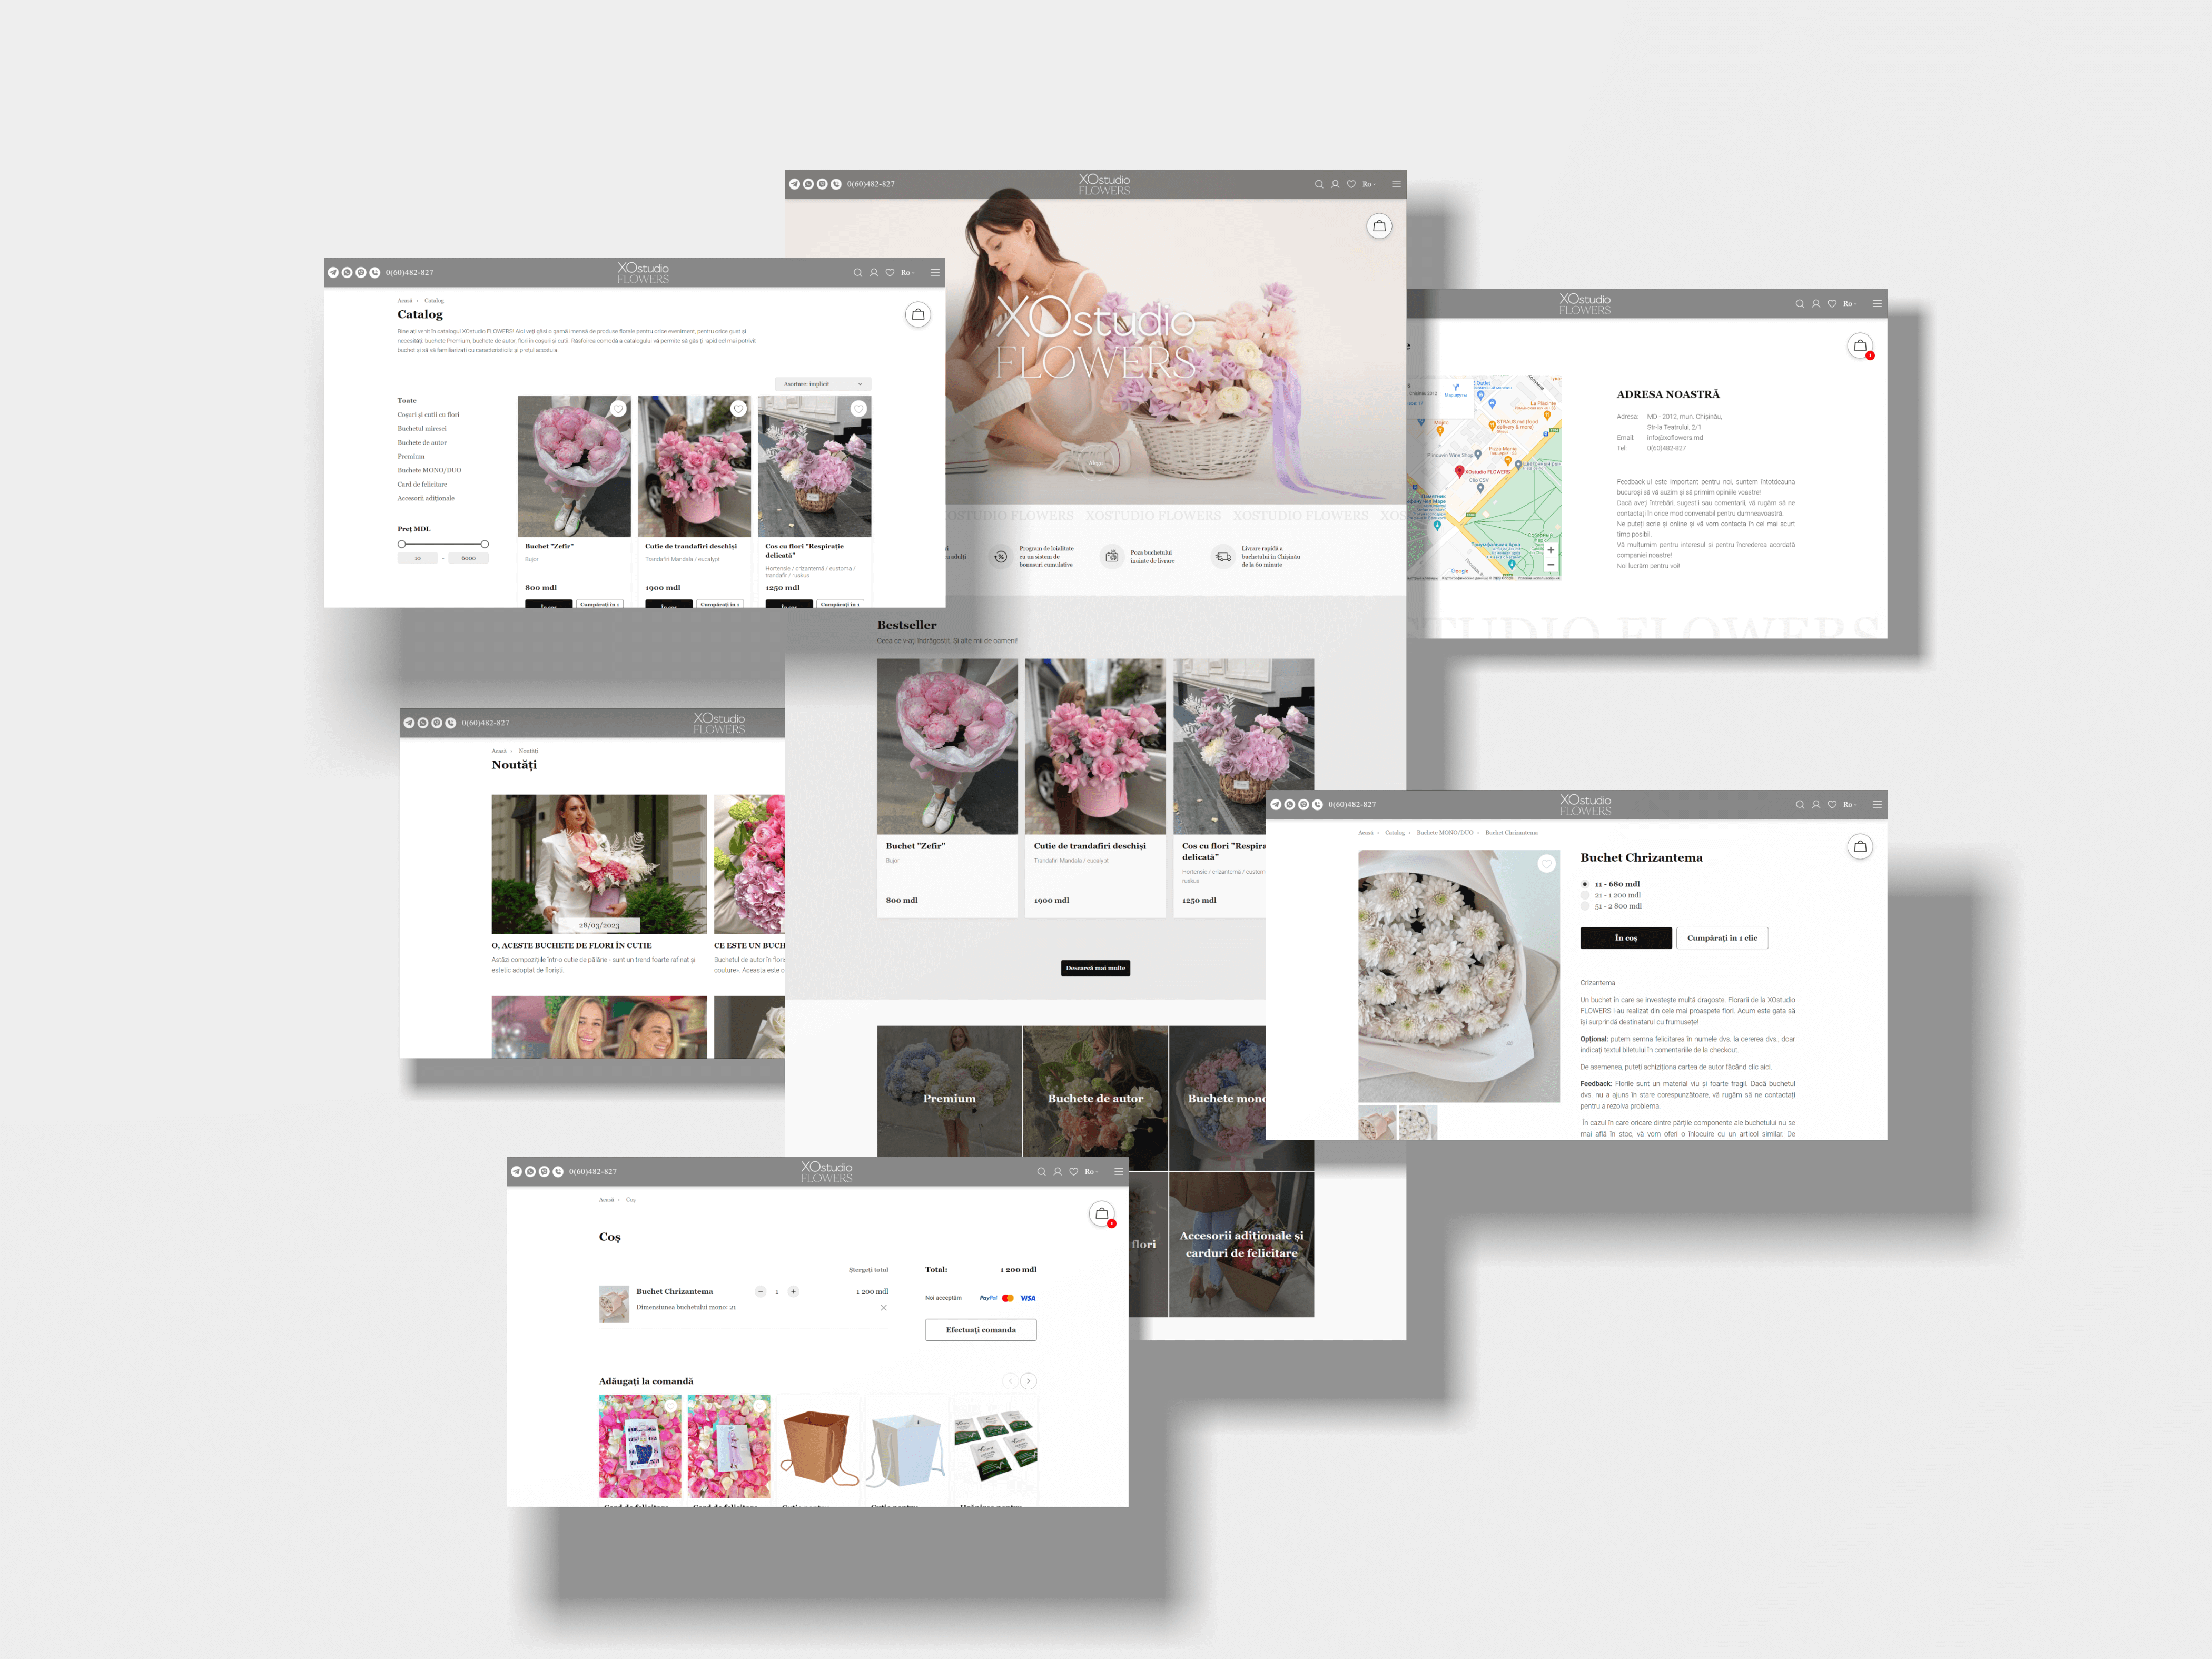 Crearea paginii web a magazinului online XOstudio FLOWERS